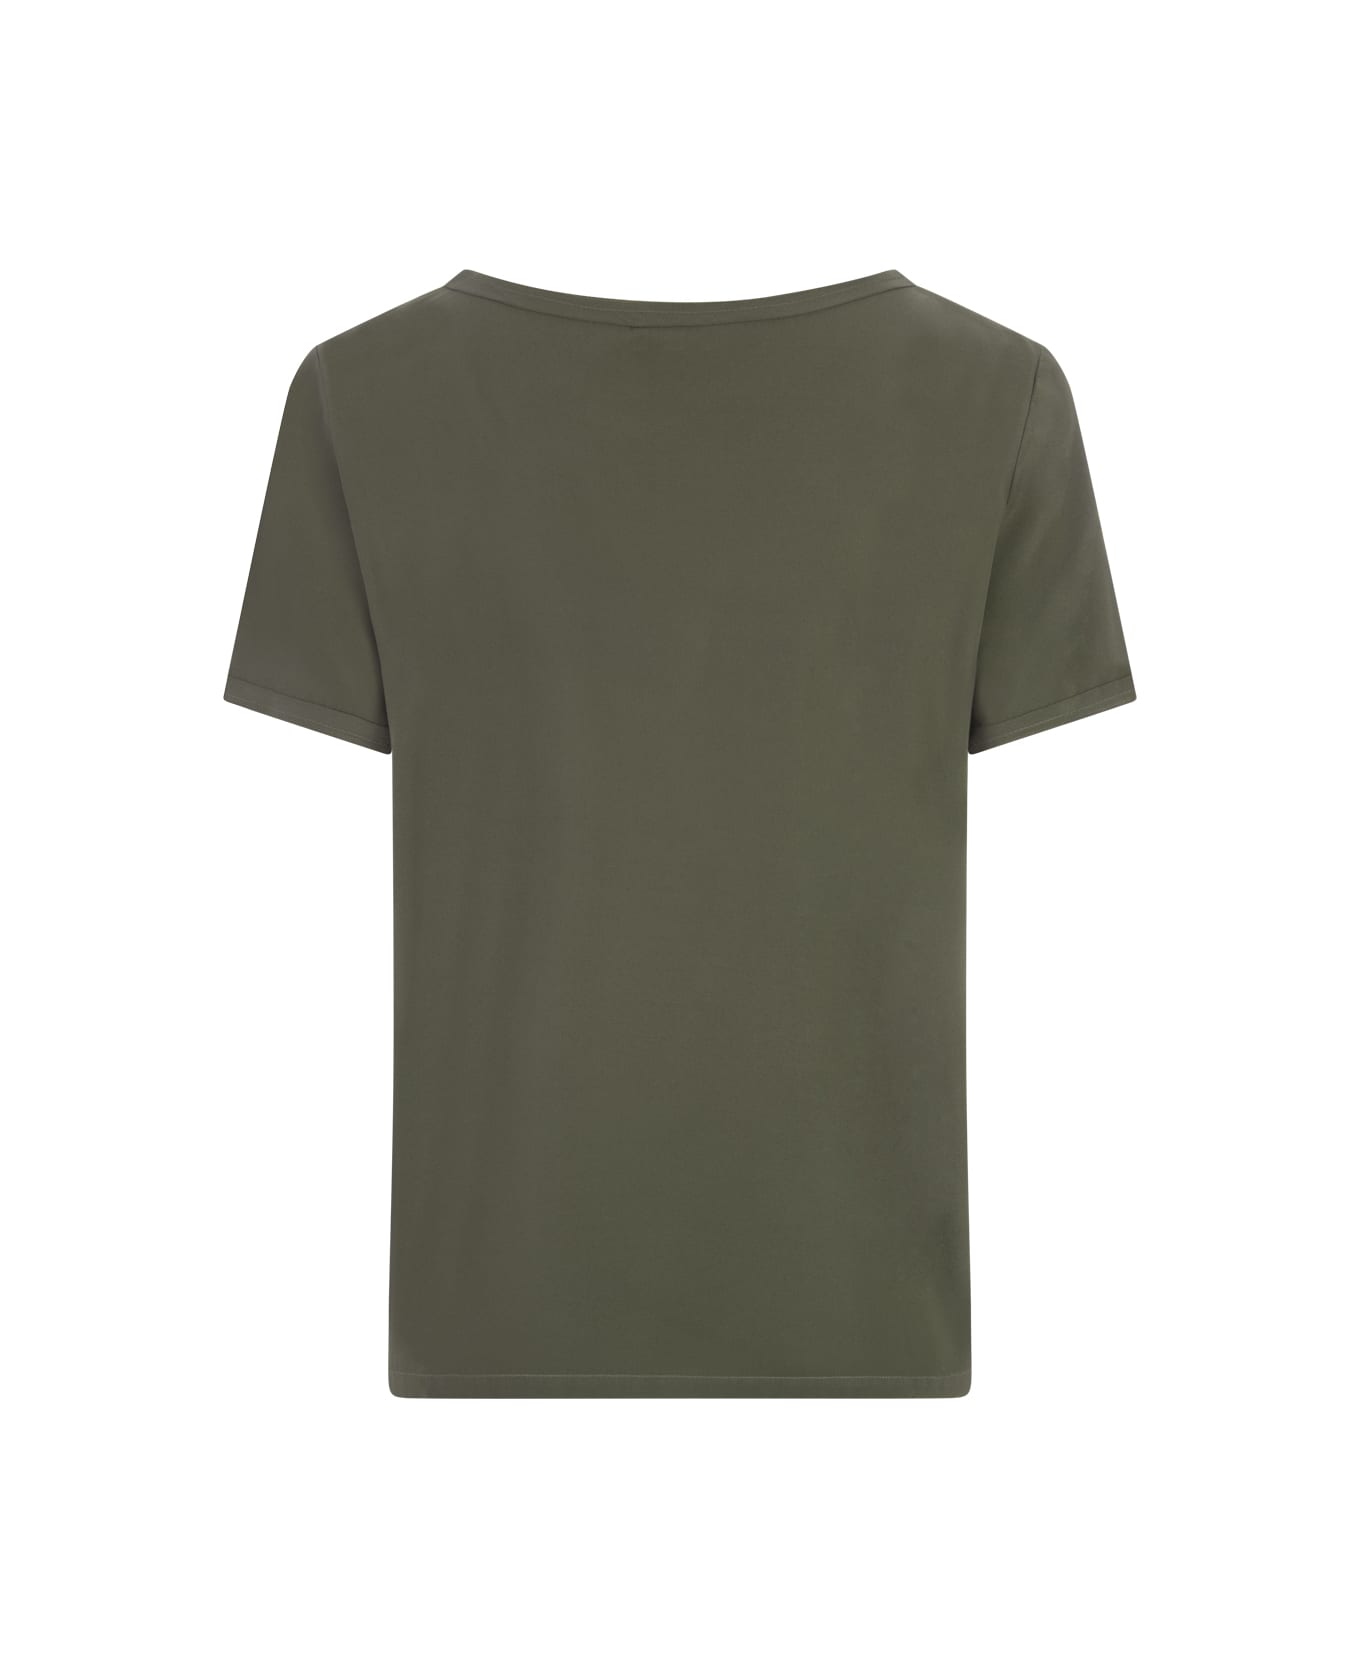 Her Shirt Military Green Opaque Silk T-shirt - Green